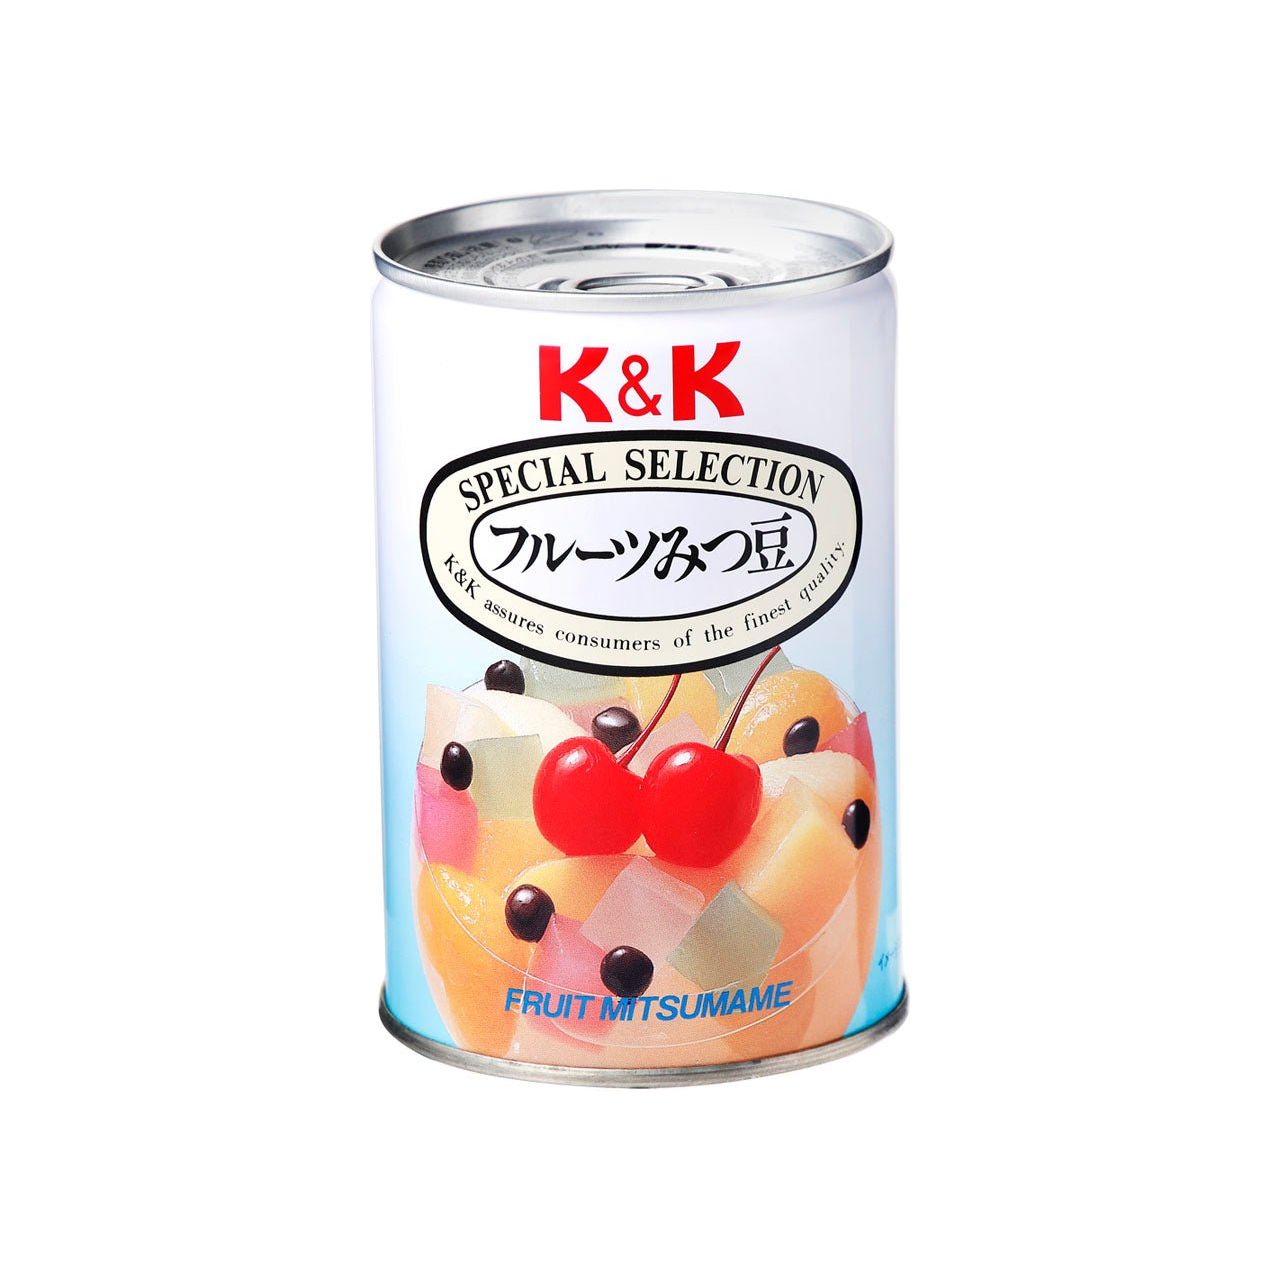 K&K Fruit Mitsu Beans (5 types de fruits, gélose, gousses rouges)